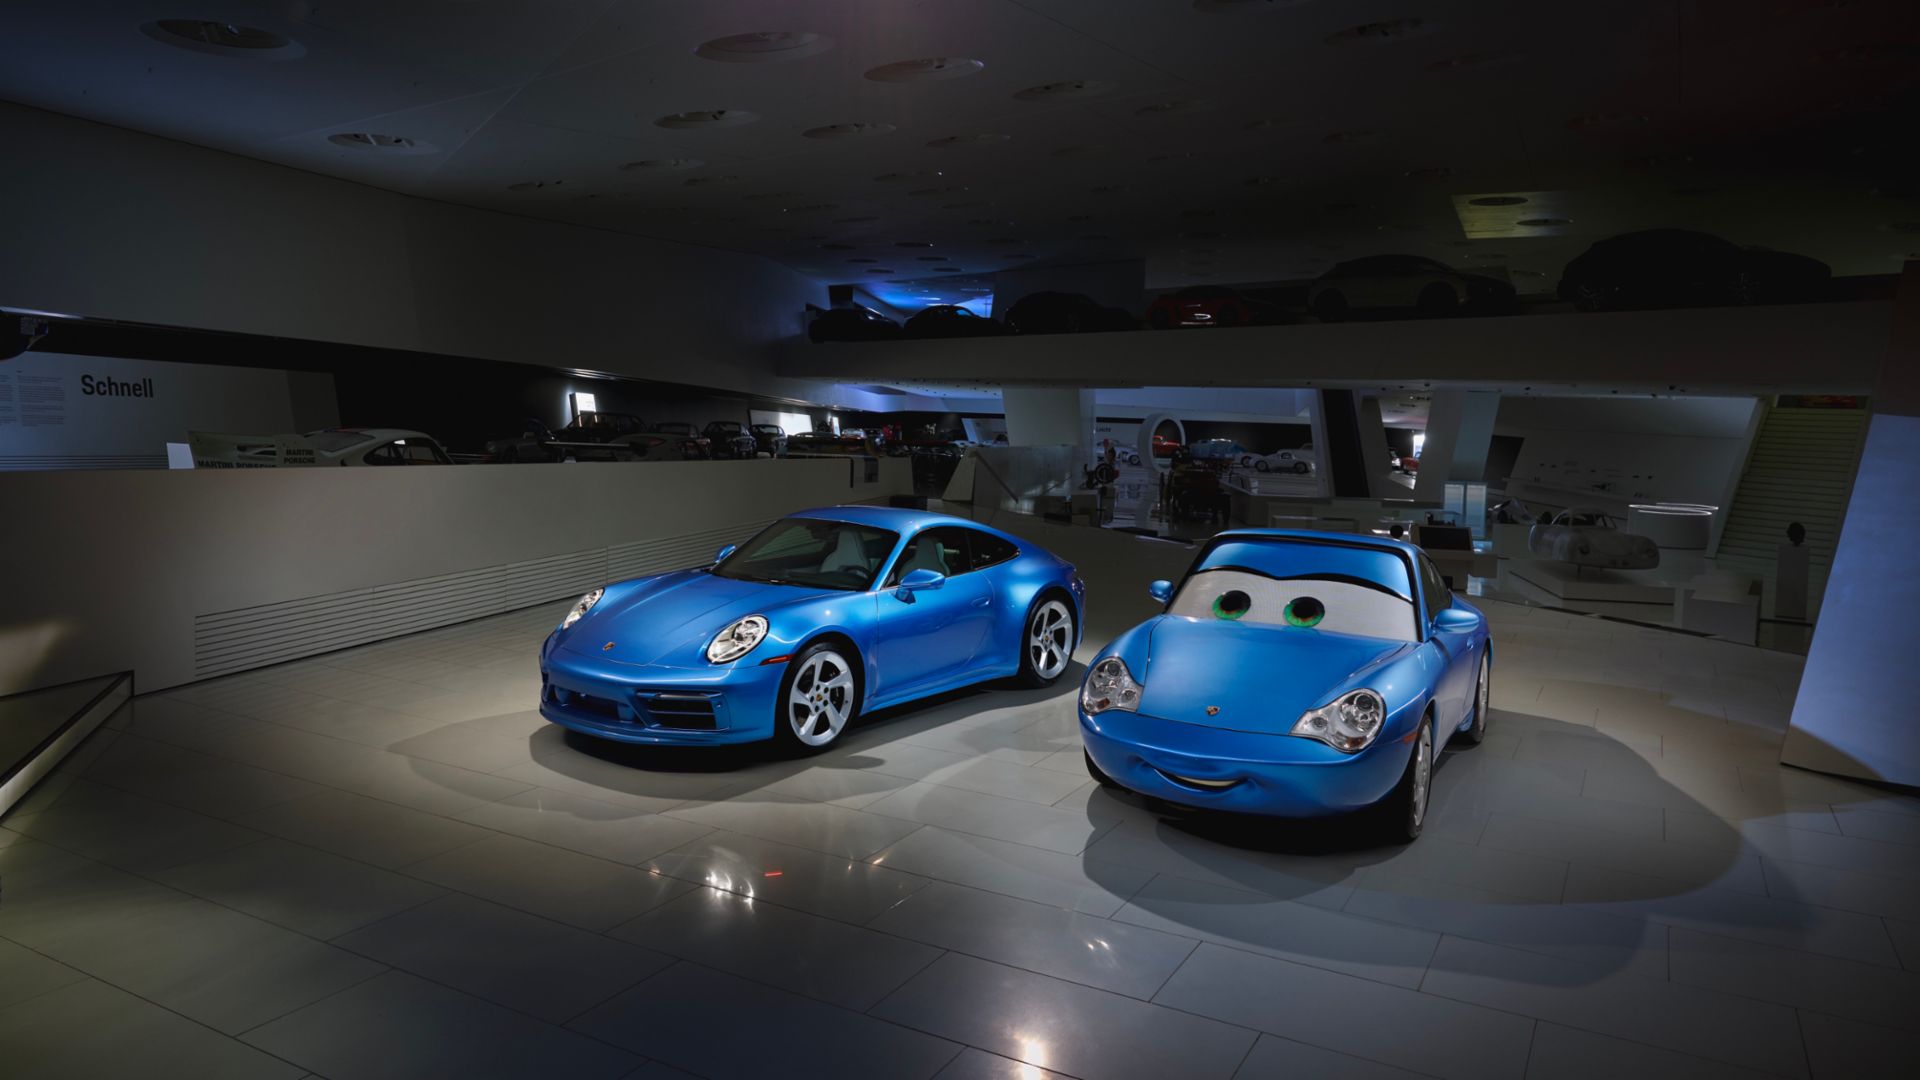 El exclusivo Porsche 911 Sally Special fue subastado por una suma récord